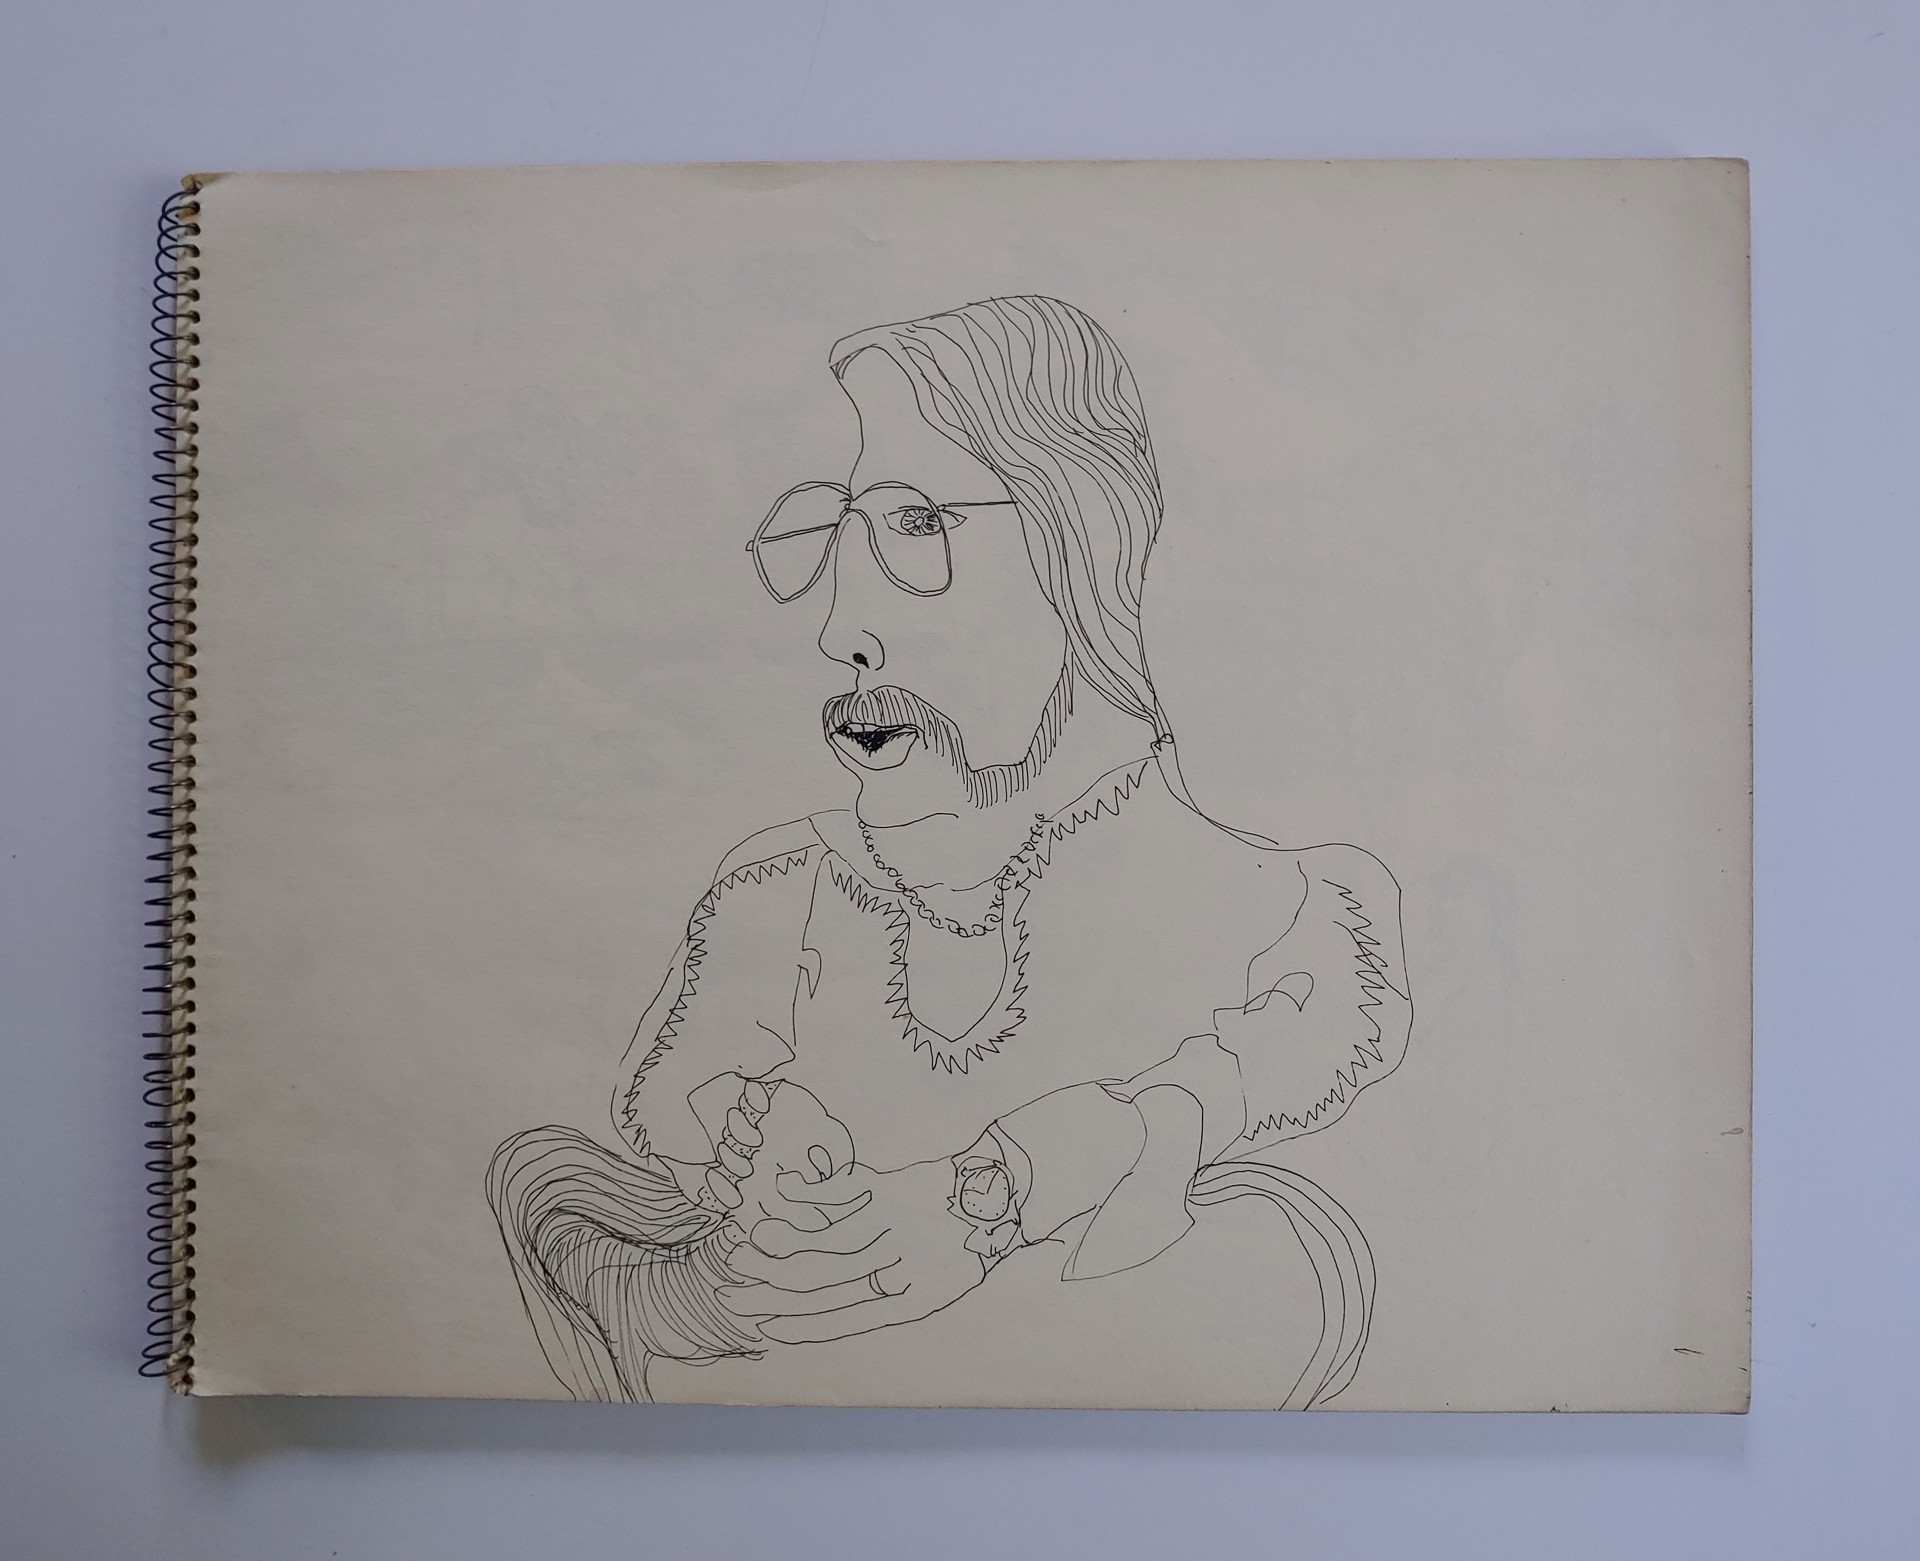 California, June 1973 Sketchbook by David Amdur